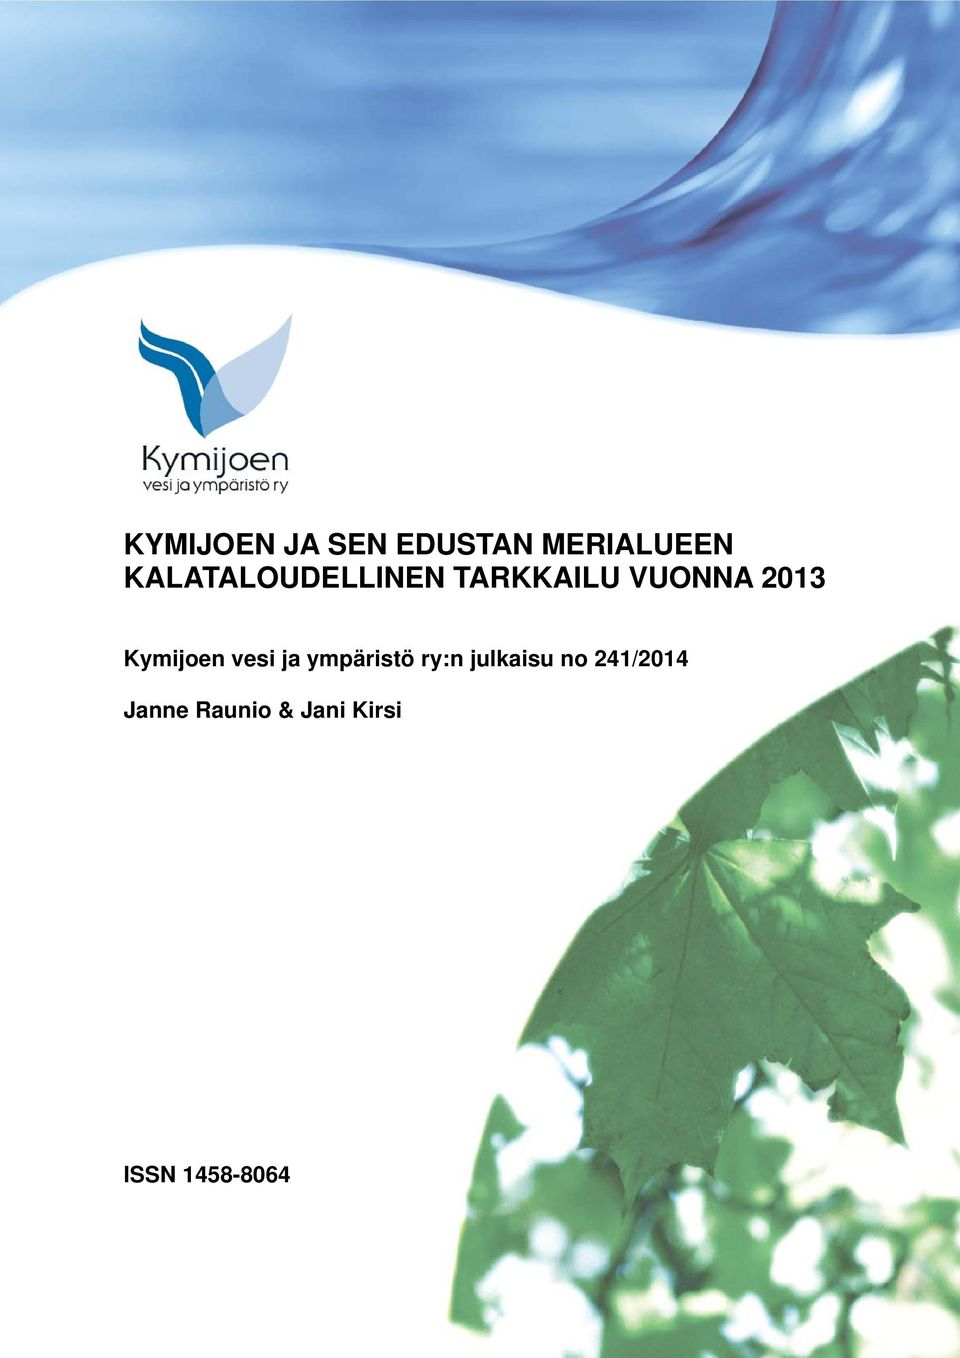 Kymijoen vesi ja ympäristö ry:n julkaisu